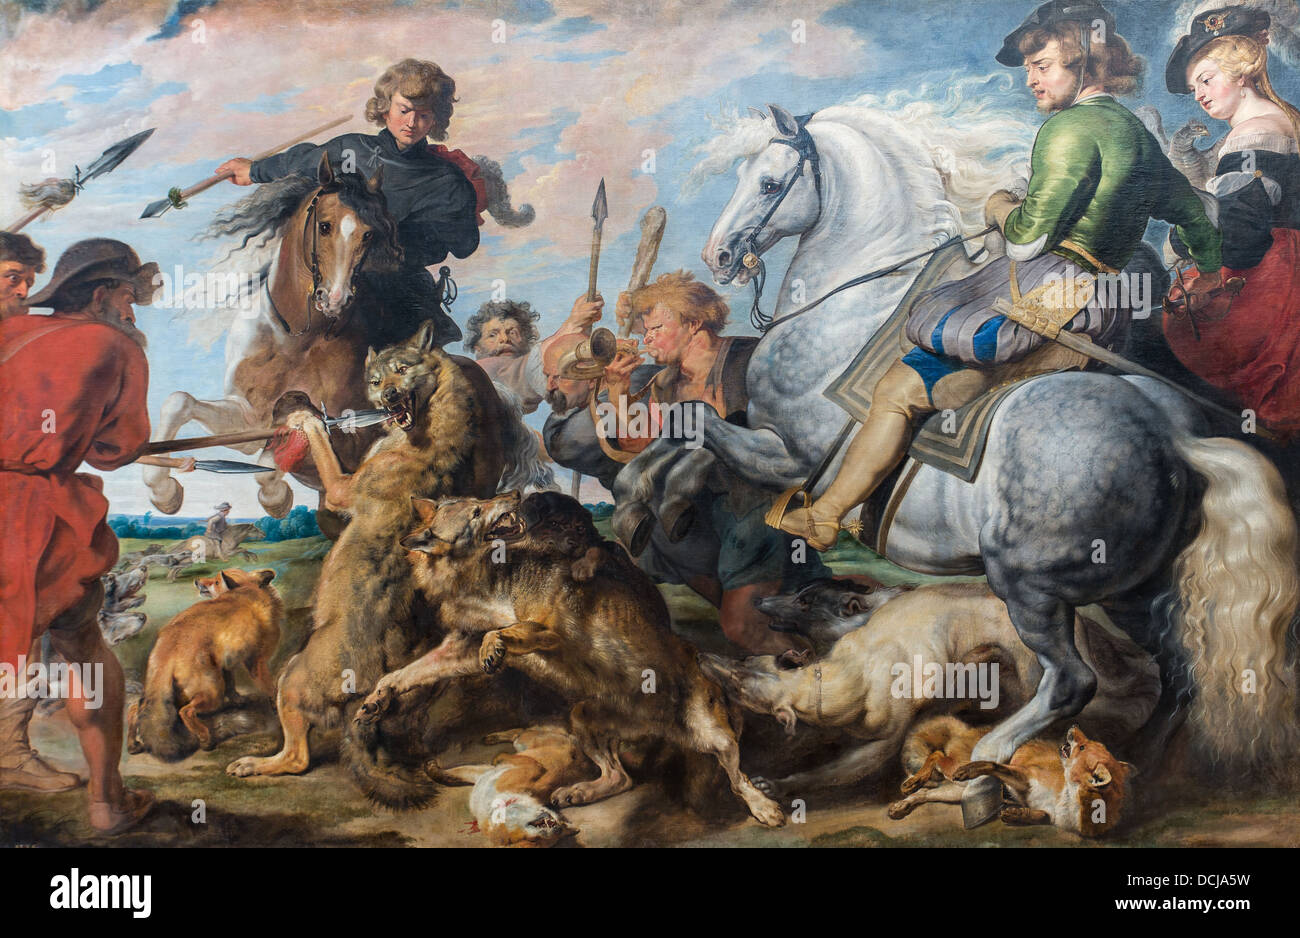 Siglo 17 - Wolf y Fox Hunt - Pedro Pablo Rubens (1616) - Museo Metropolitano de Arte, Nueva York, óleo sobre lienzo Foto de stock